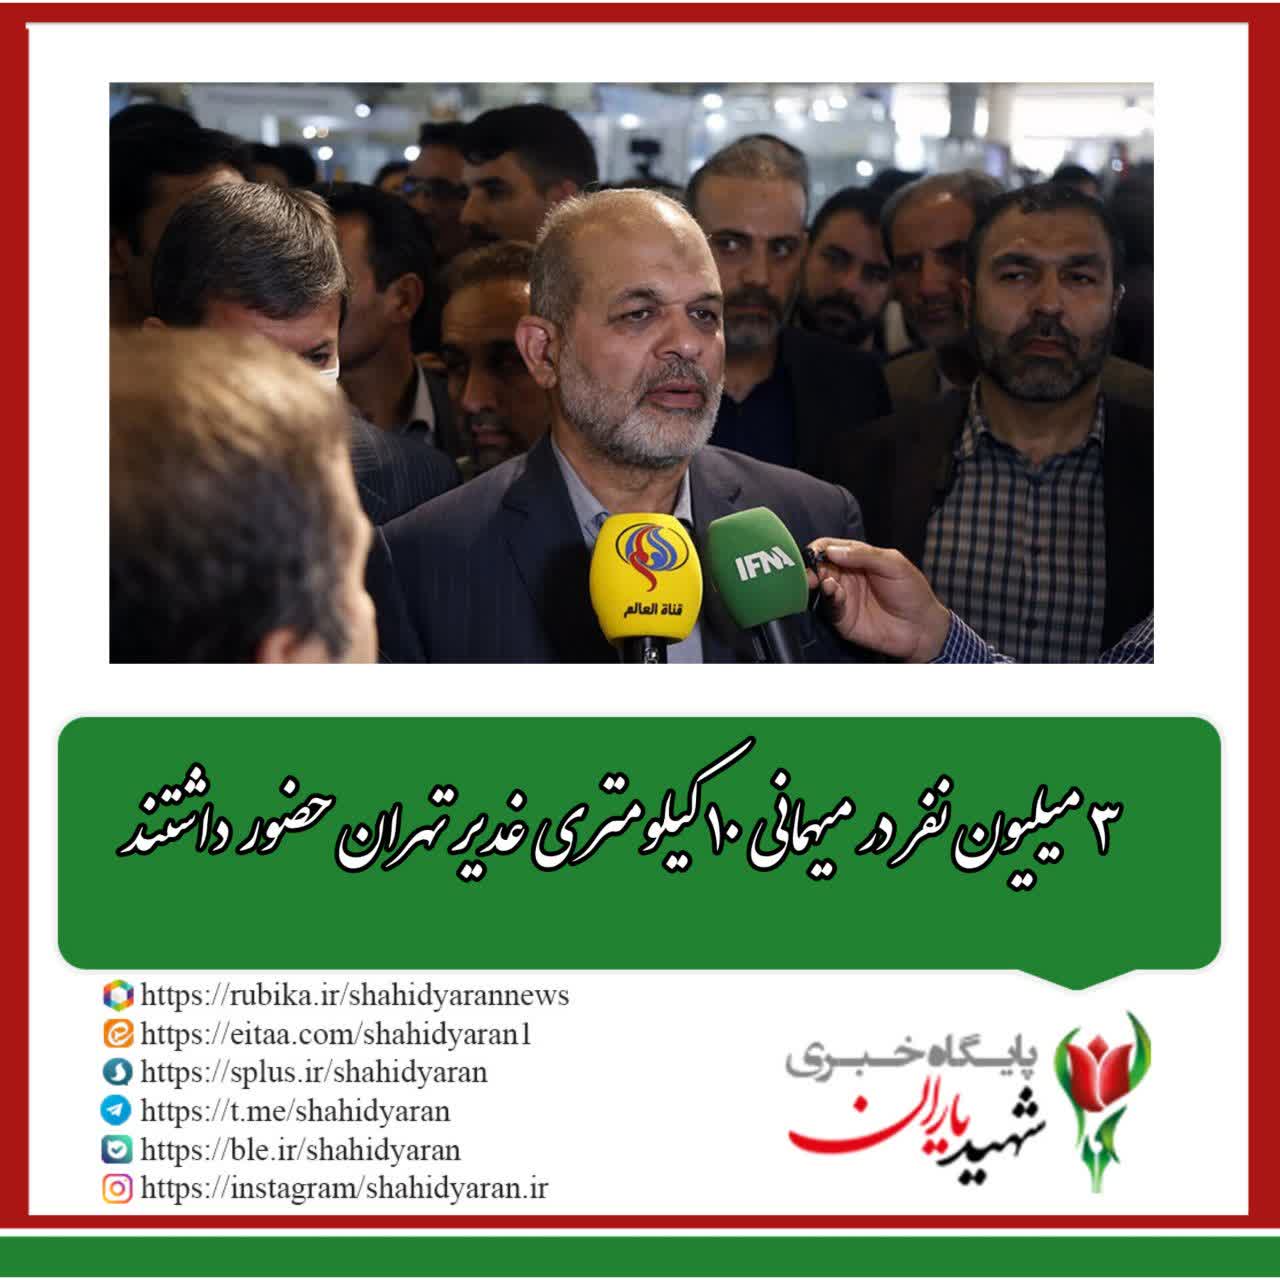 وزیر کشور: ۳ میلیون نفر در میهمانی ۱۰ کیلومتری غدیر تهران حضور داشتند